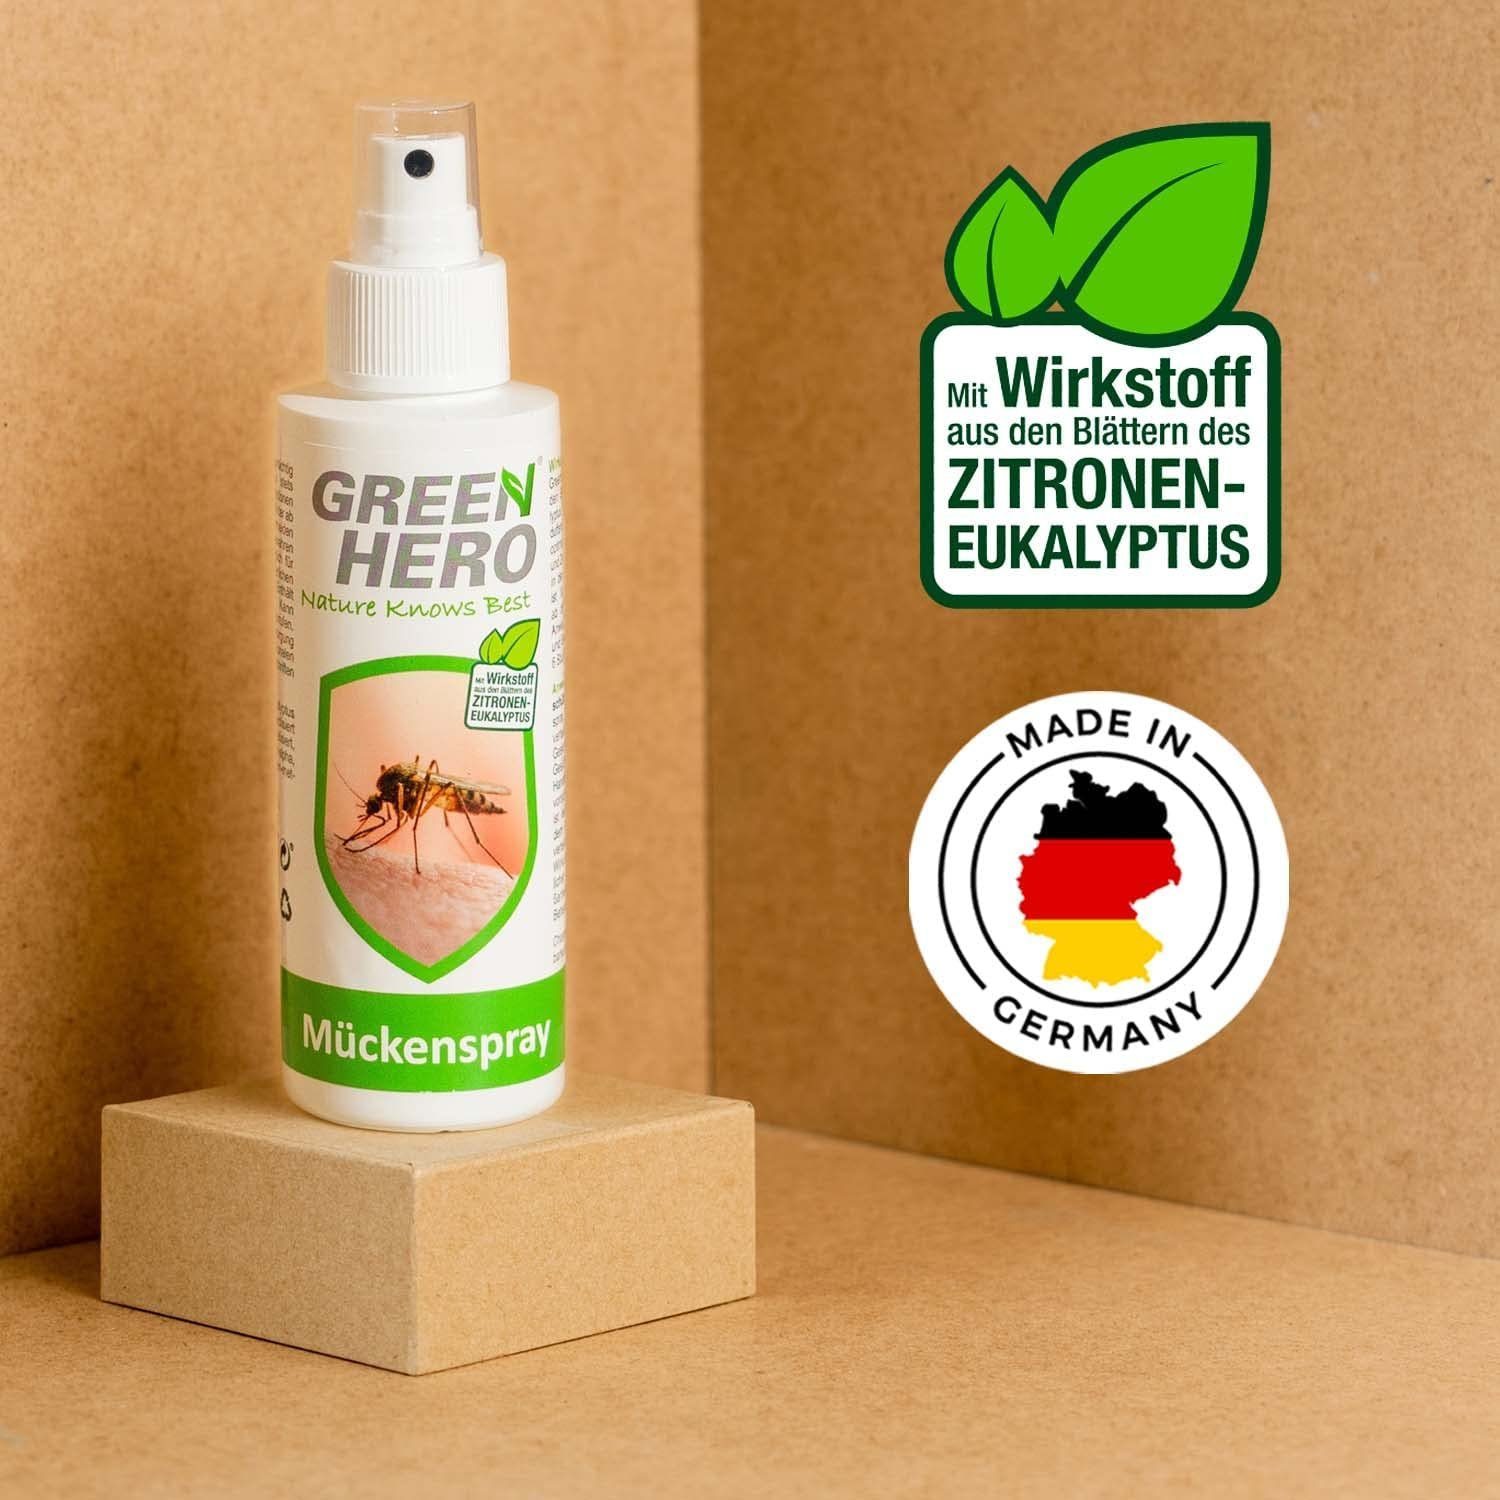 GreenHero Insektenspray Mückenspray schützt vor & Zecken, Steckmücken, Moskitos ml, 100 Mückenschutz